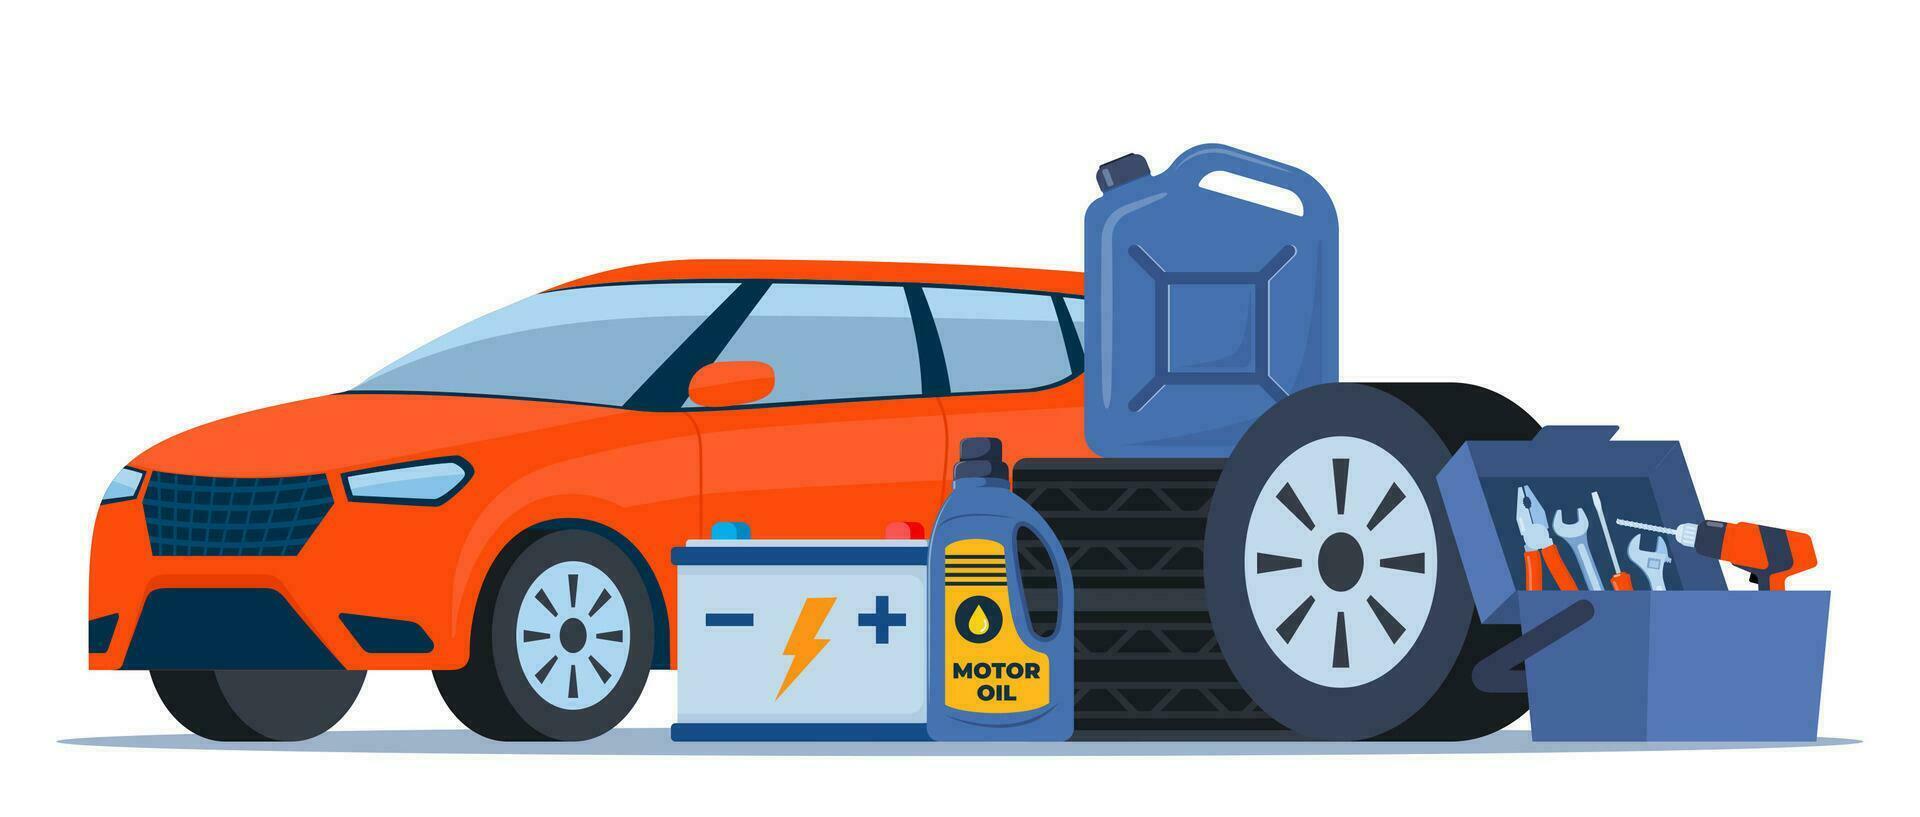 bil och bil service Tillbehör sammansättning med verktyg utrustning, bensin burk och batteri. vektor illustration.